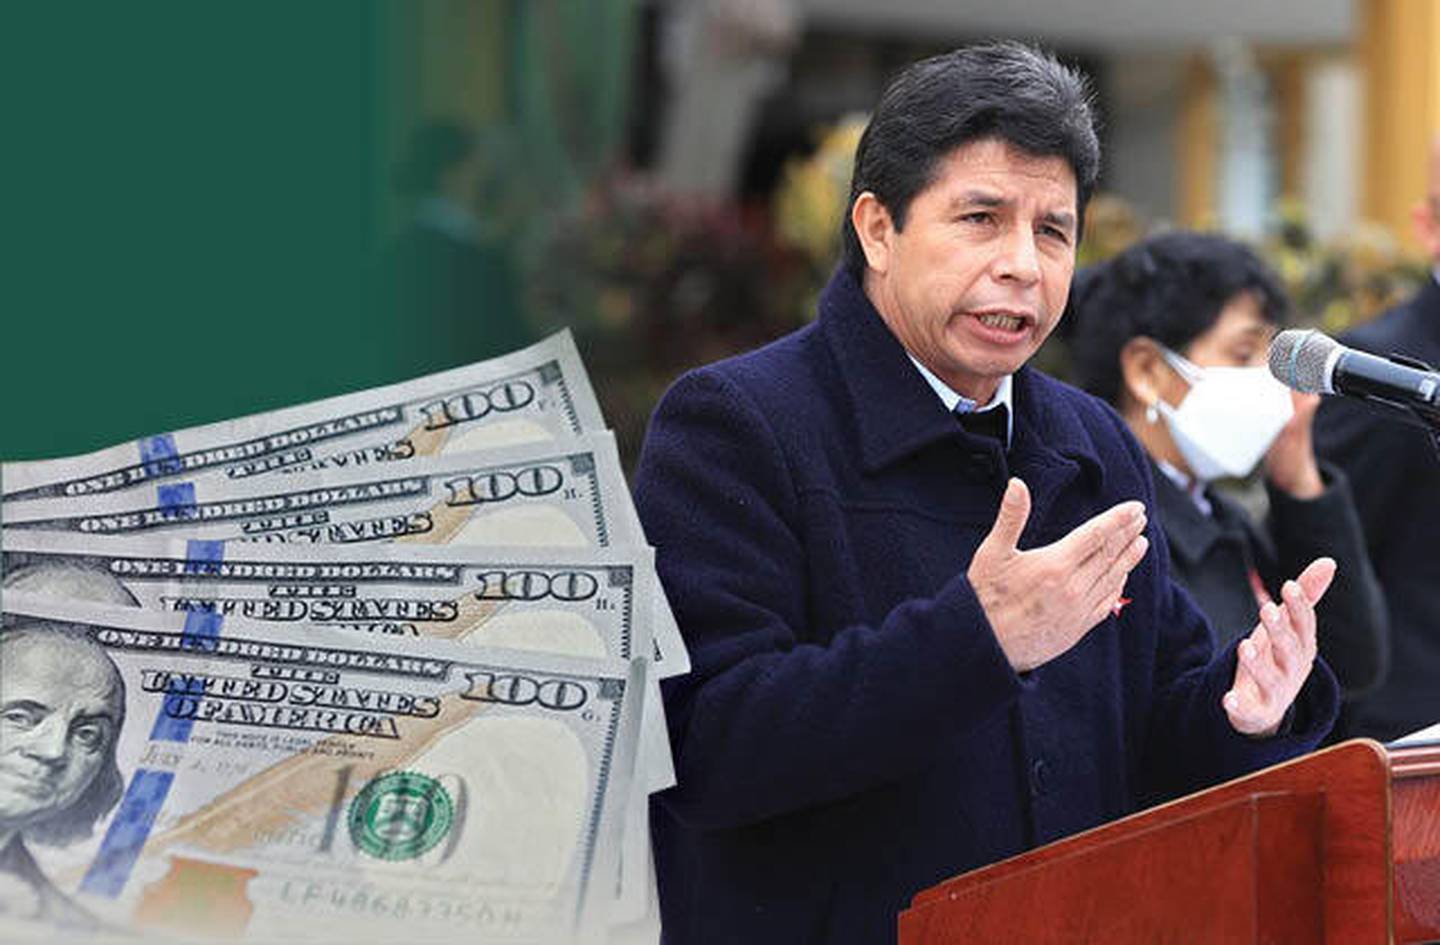 La presidencia de Pedro Castillo generó dudas a nivel económico sobre lo que podría ocurrir durante su gestión. Pero factores internacionales también han pesado en algunos indicadores claves del país andino.